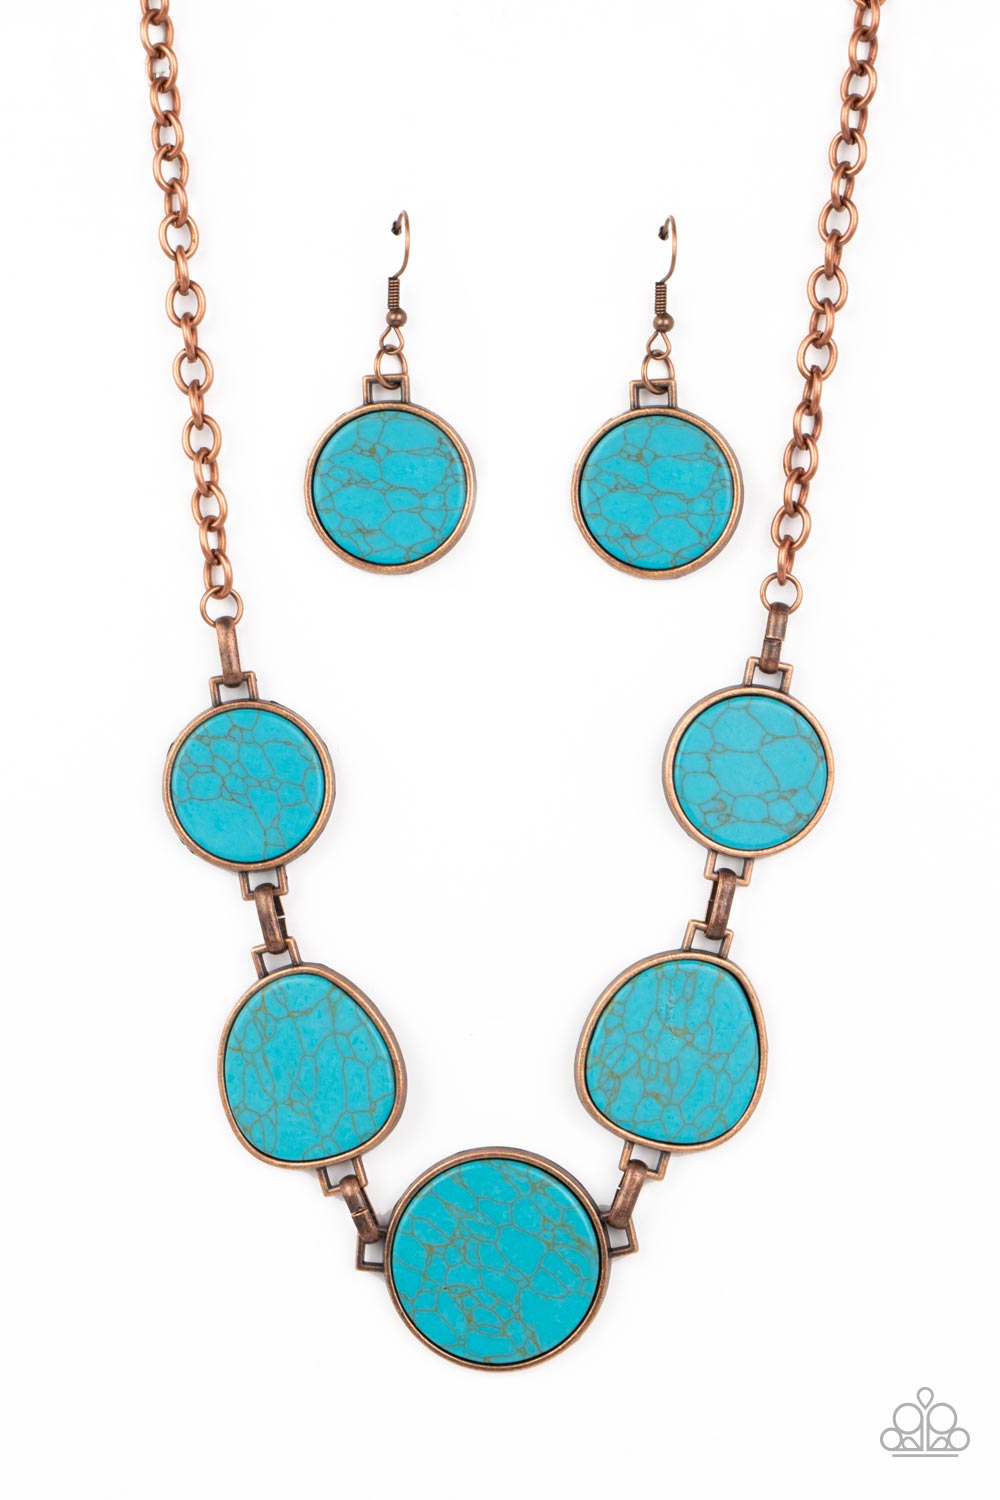 Santa Fe Flats - copper - Paparazzi necklace